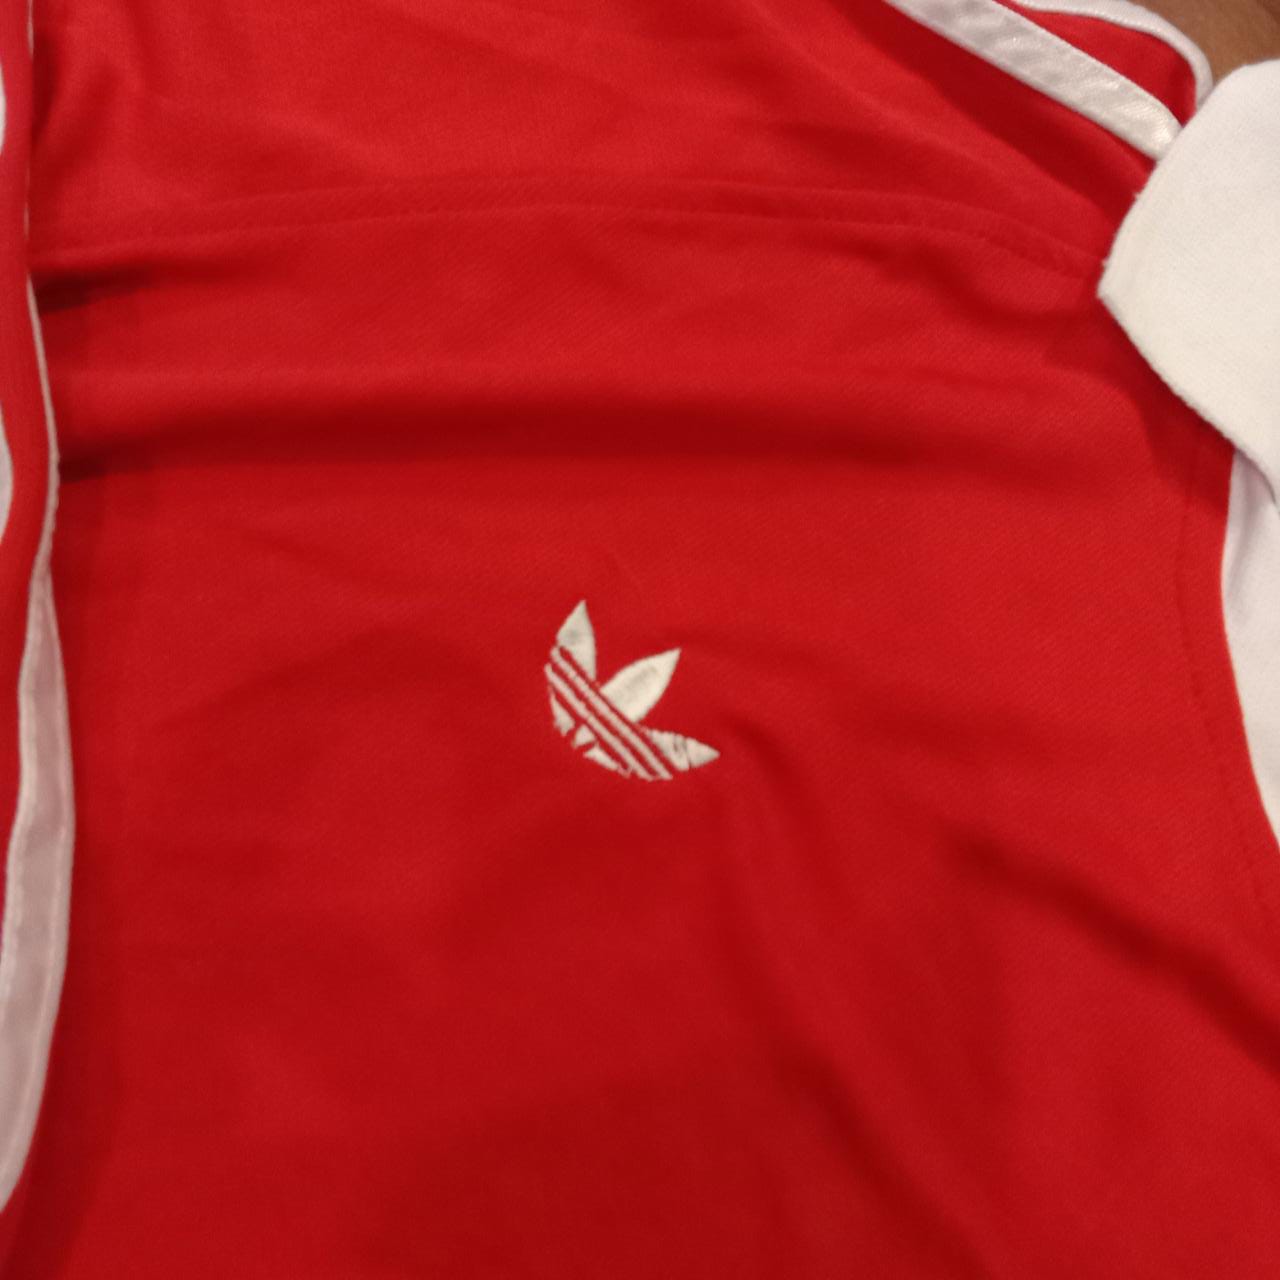 1980 Scunthorpe United FC Shirt